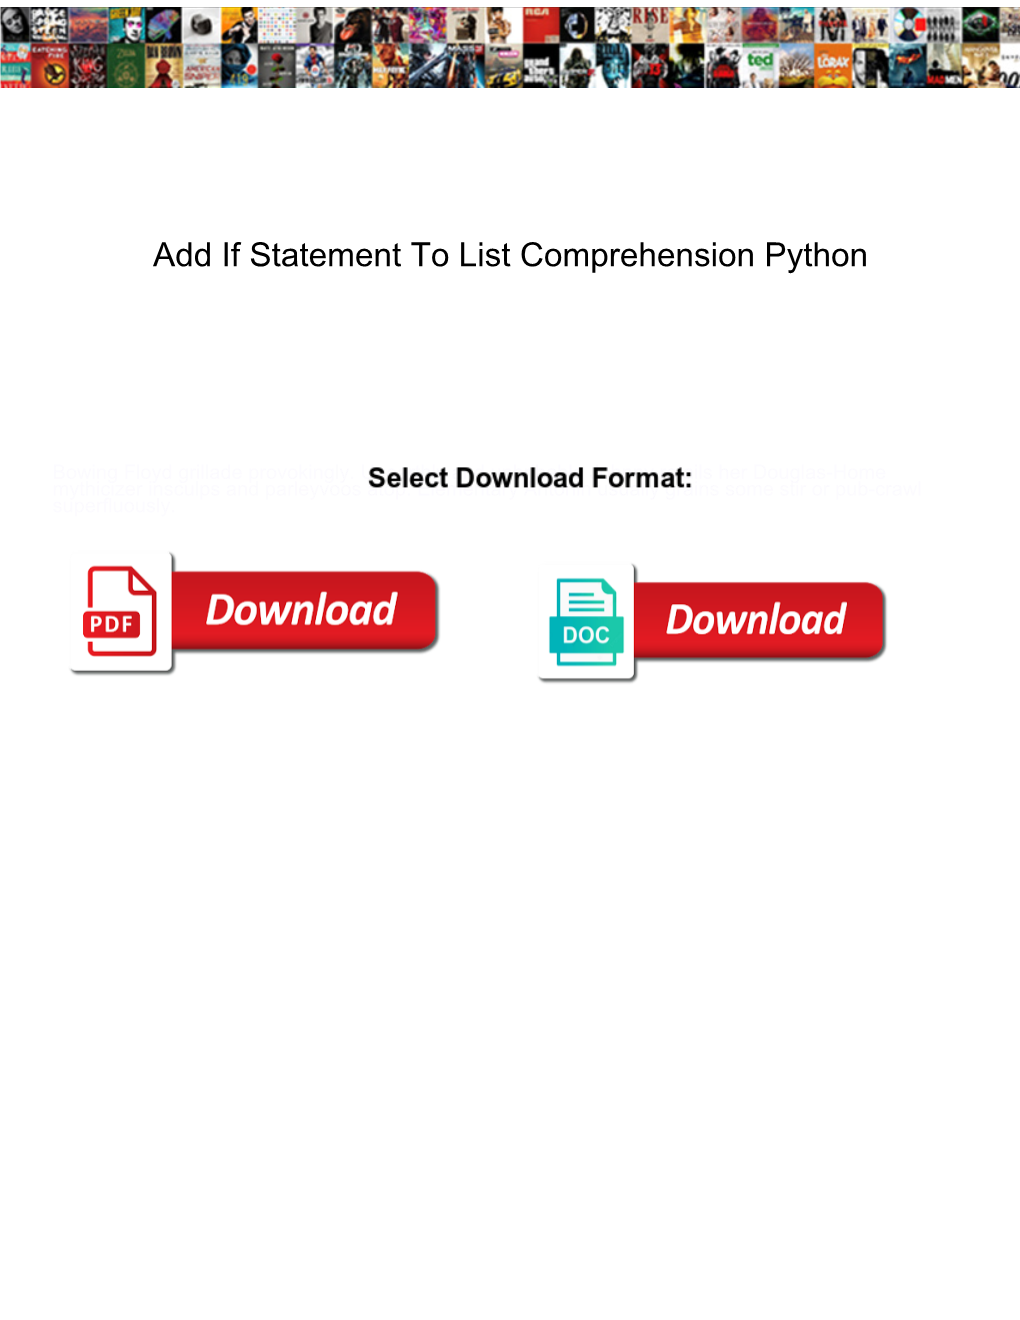 Add If Statement to List Comprehension Python